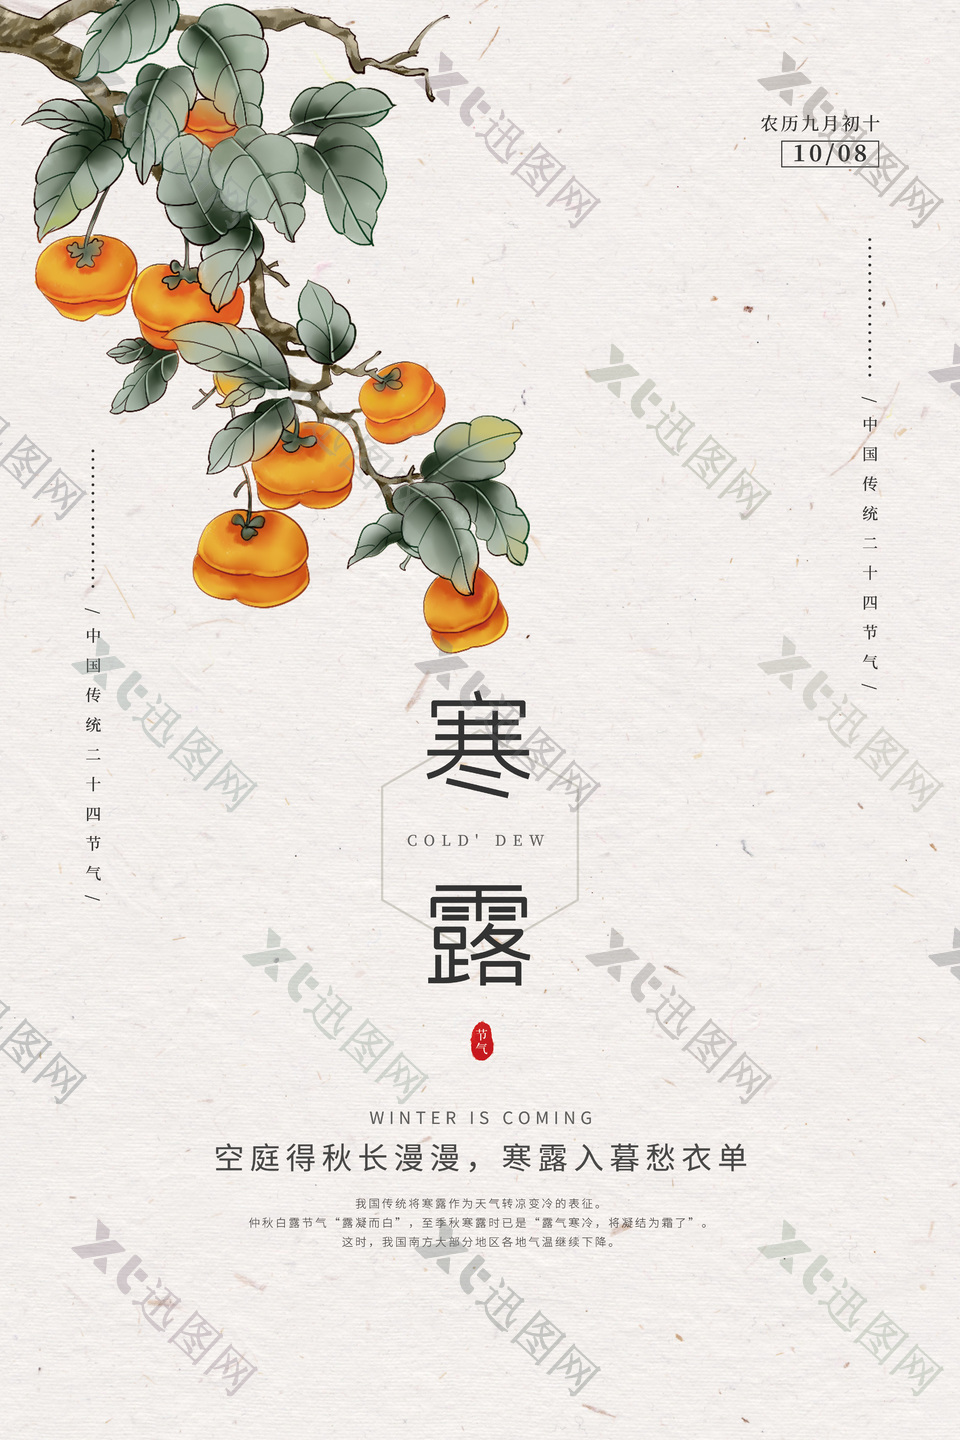 寒露时节创意柿子元素海报